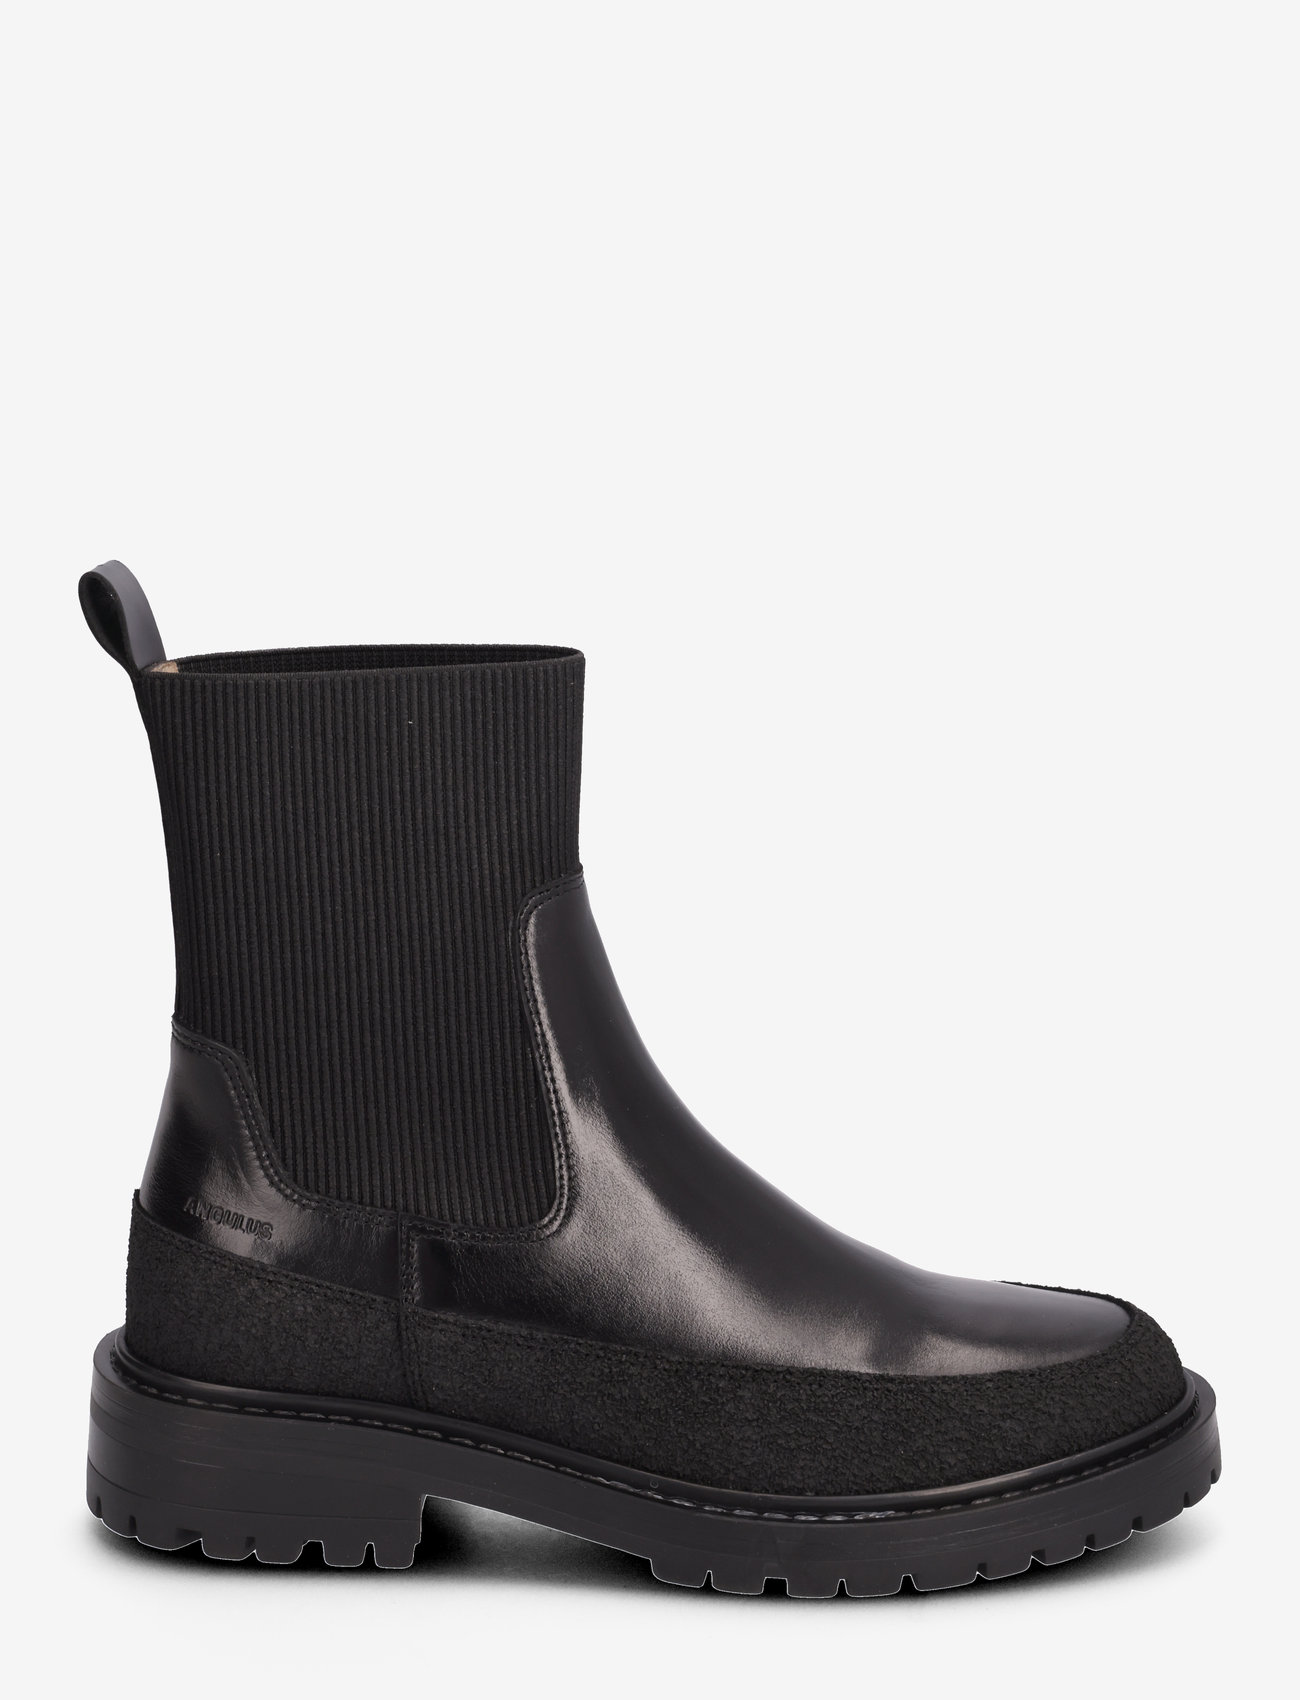 ANGULUS - Boots - flat - chelsea-saapad - 1321/1835/019 black - 1